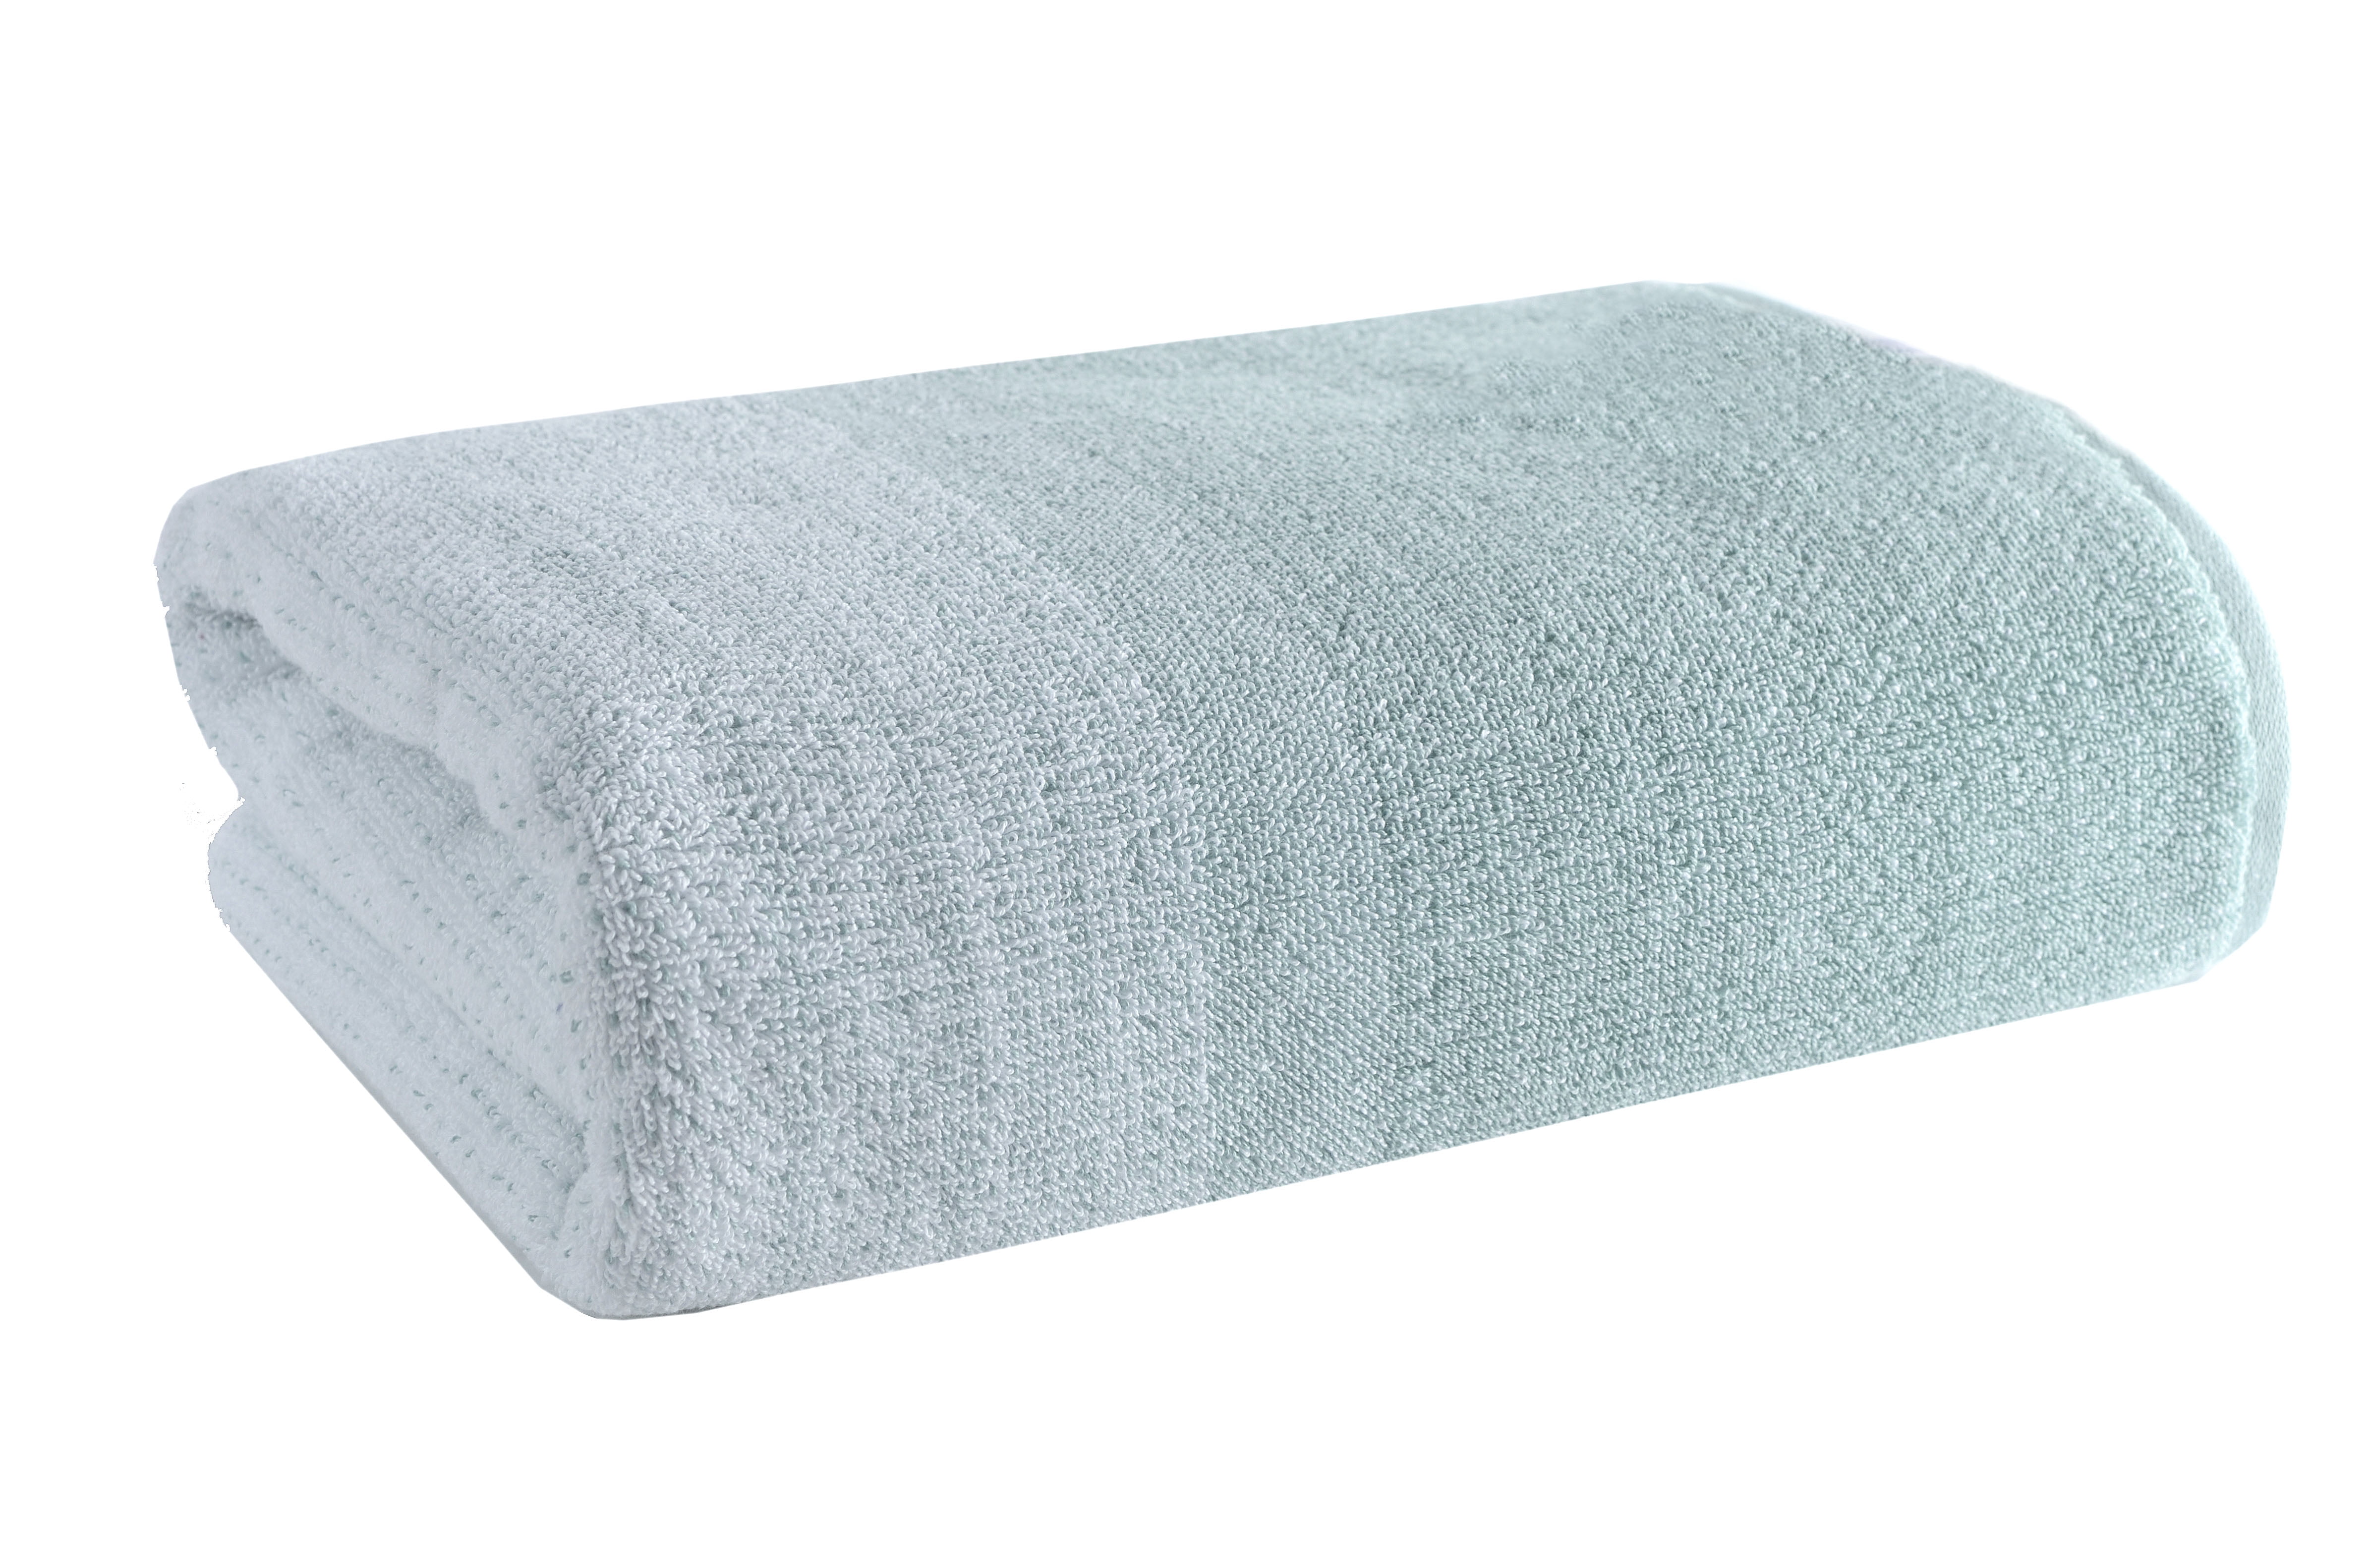 Plush Shadow Grey Towel Resort Bundle (4 Wash + 4 Hand + 4 Bath